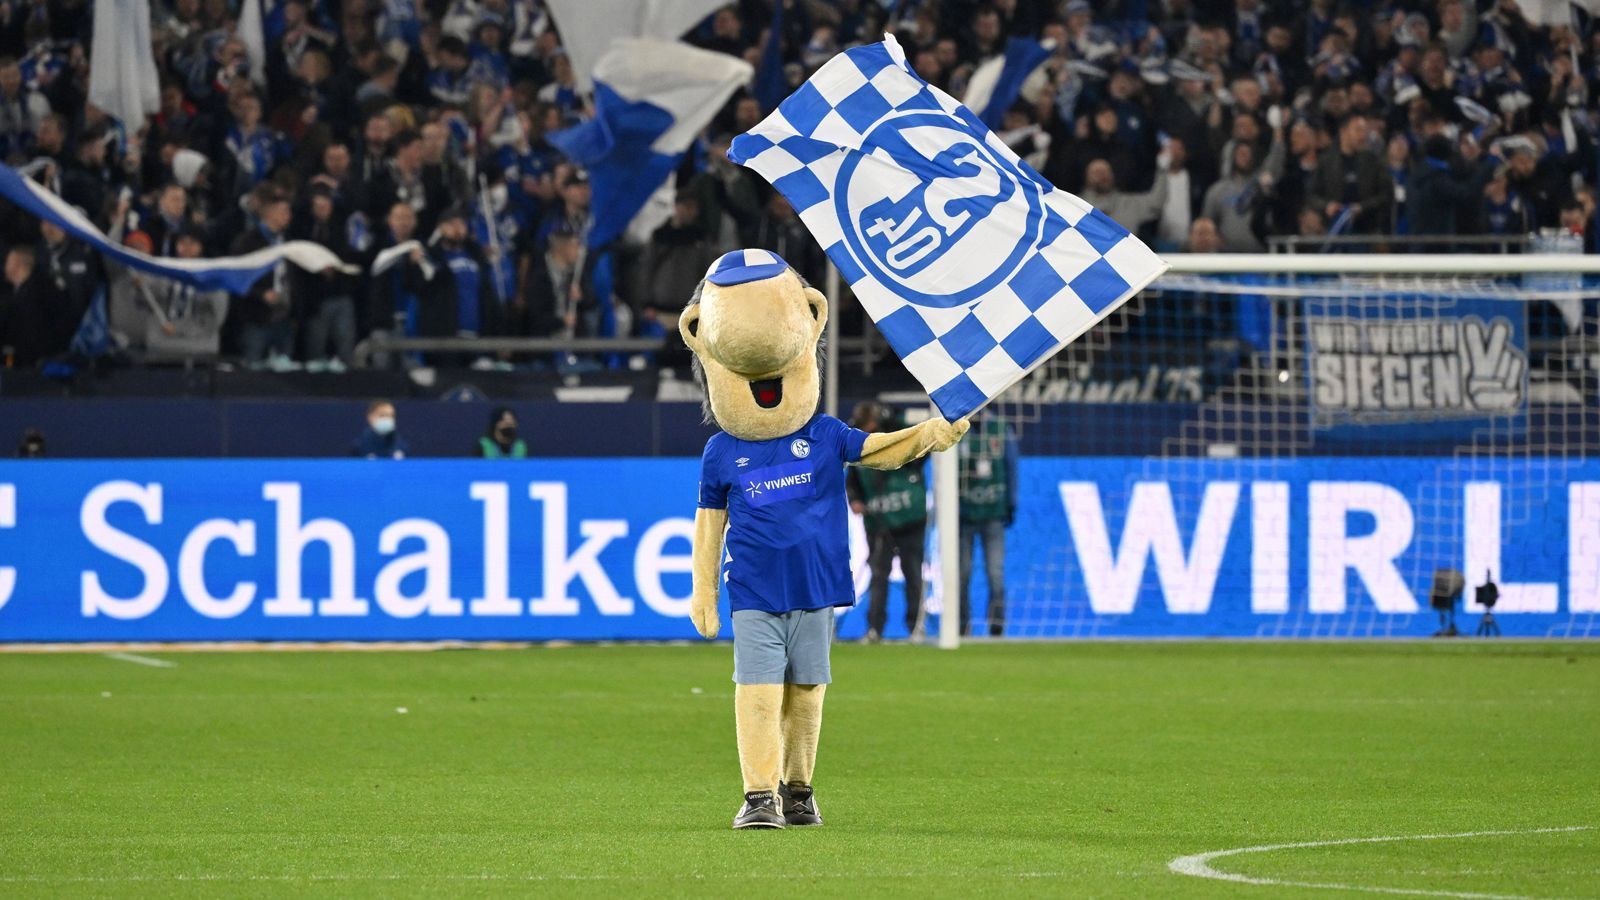 
                <strong>Platz 7: FC Schalke 04 - Erwin</strong><br>
                Erwin ist der Typ, den man noch Stunden nach dem Abpfiff in urigen Eckkneipen über das abgepfiffene Spiel reden hört. Ein echter Junge aus dem Pott, ein Kumpel, Schalker durch und durch. Zu seinem Glück hat er keine Augen, für ihn hat die Saison 2020/2021 also nie wirklich stattgefunden.
              